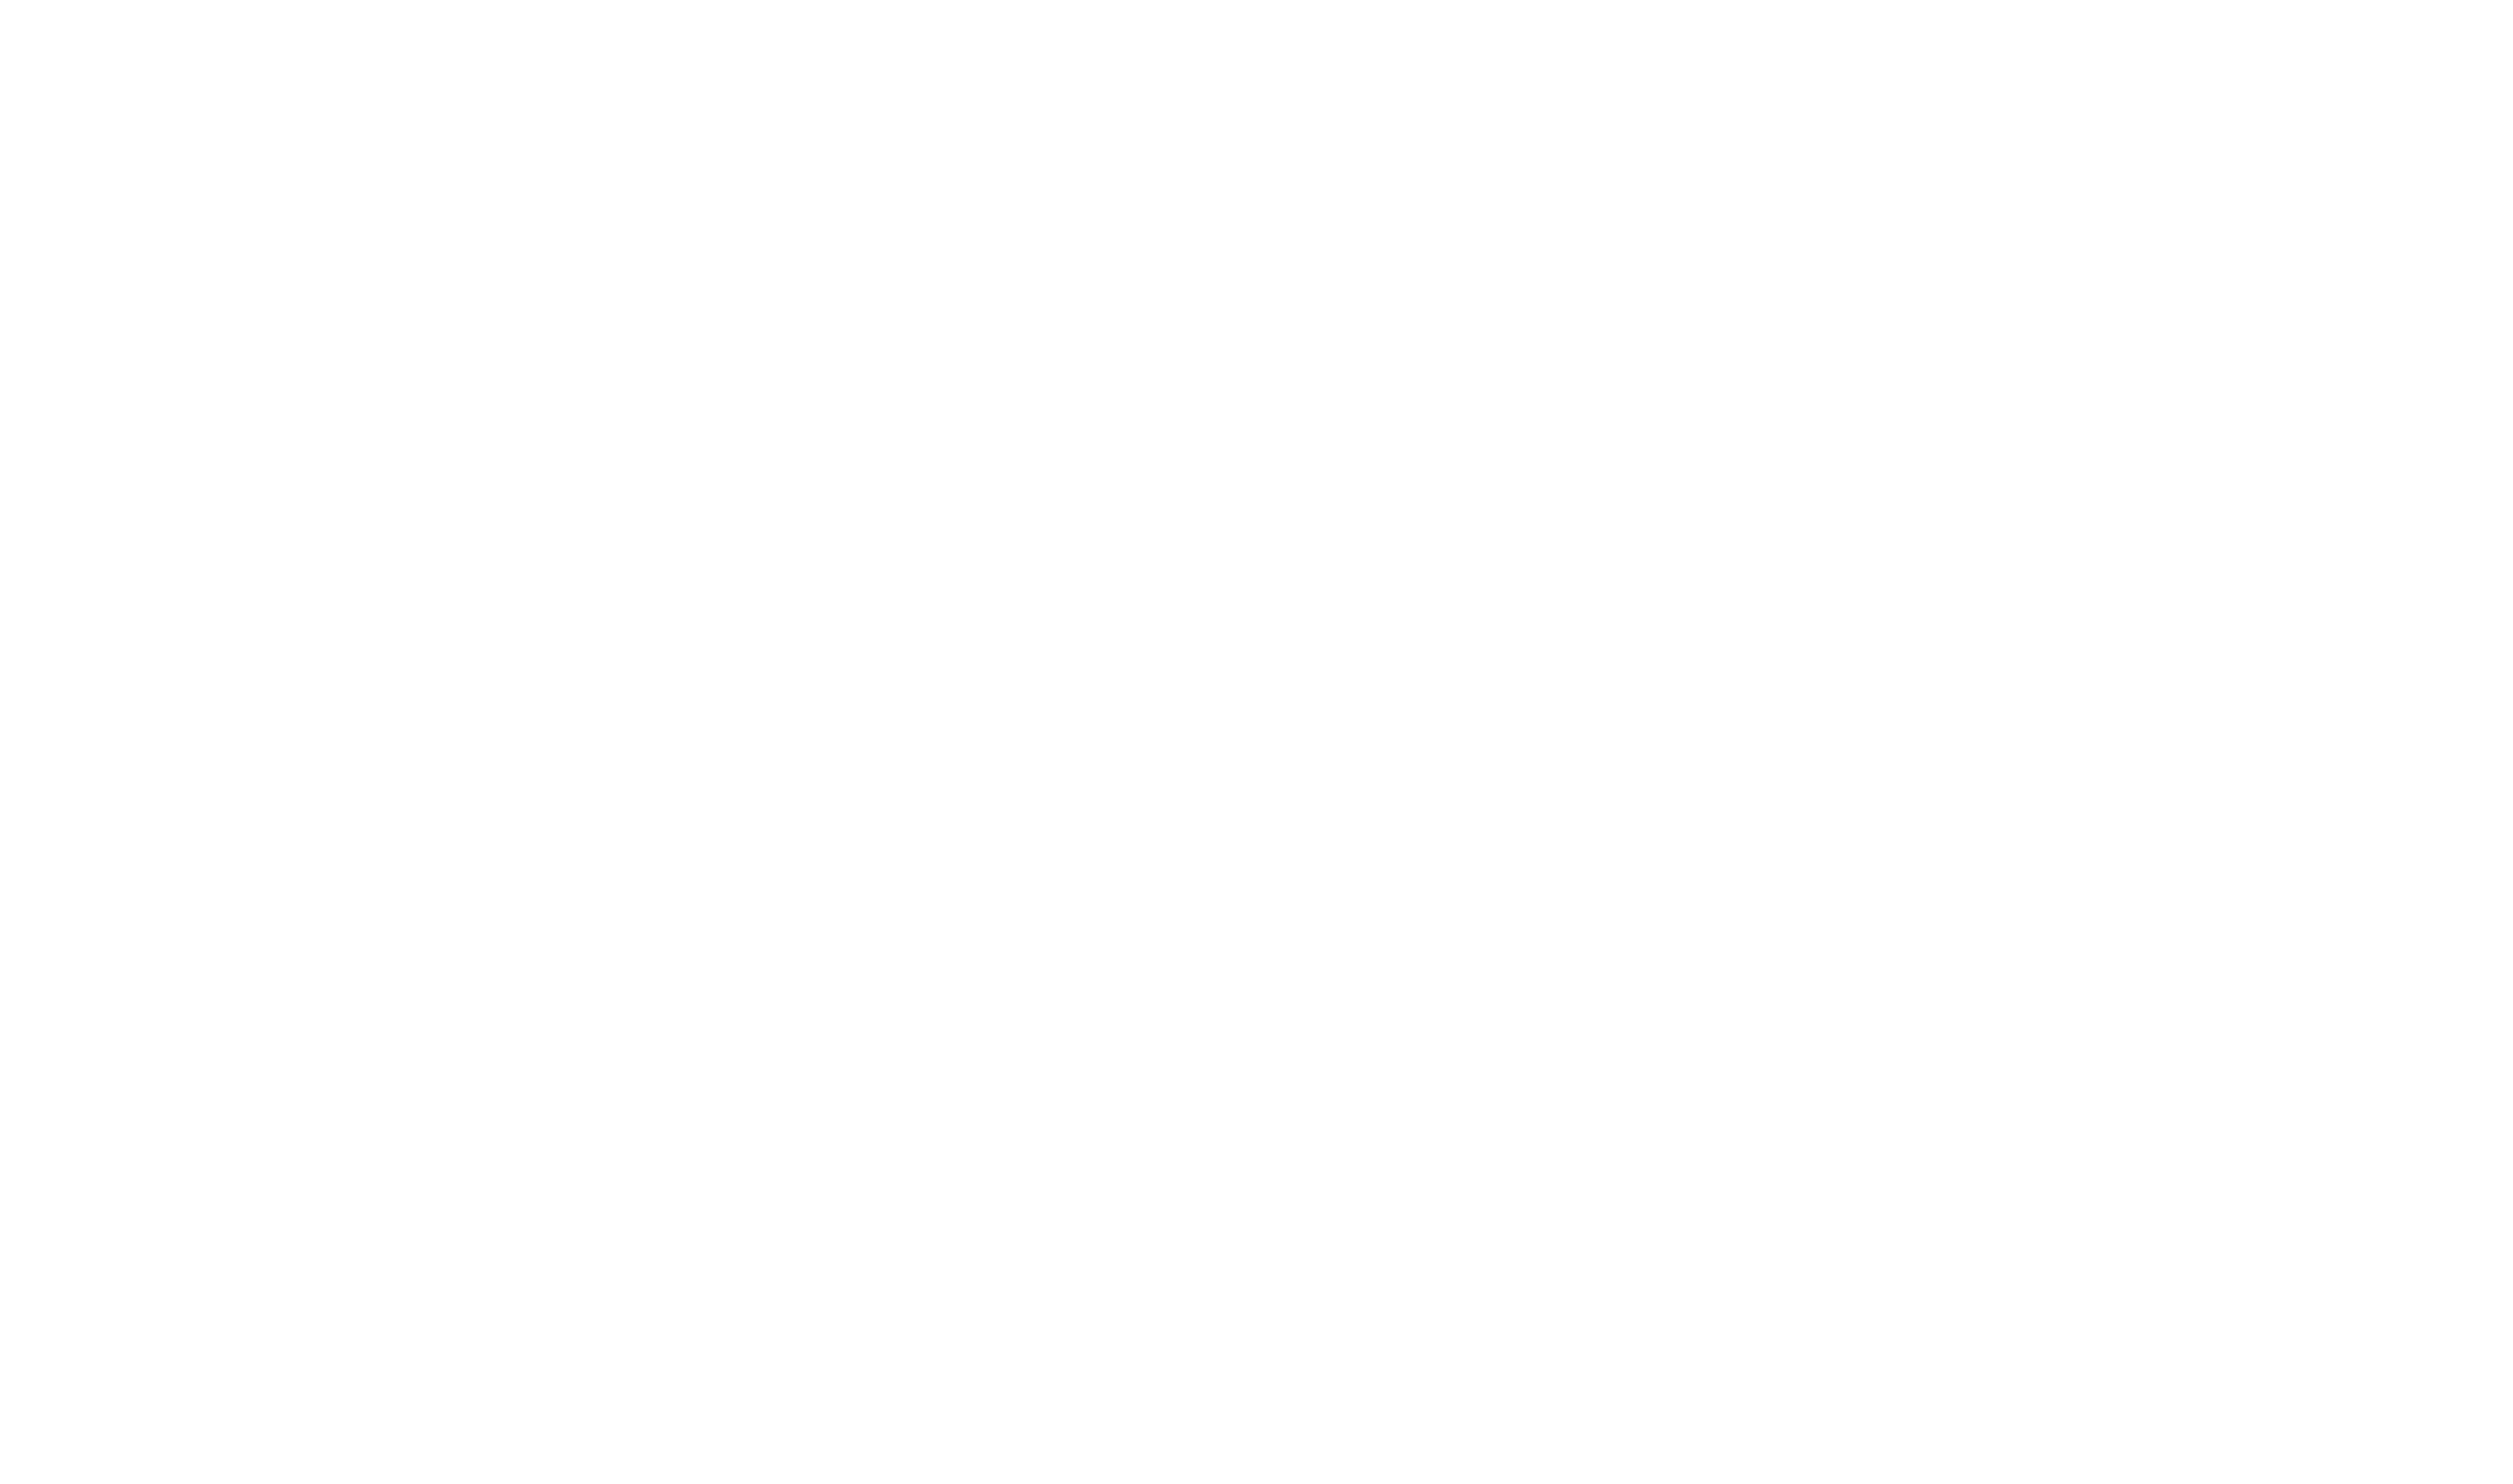 Buy Plants vs. Zombies – PC & Mac – EA